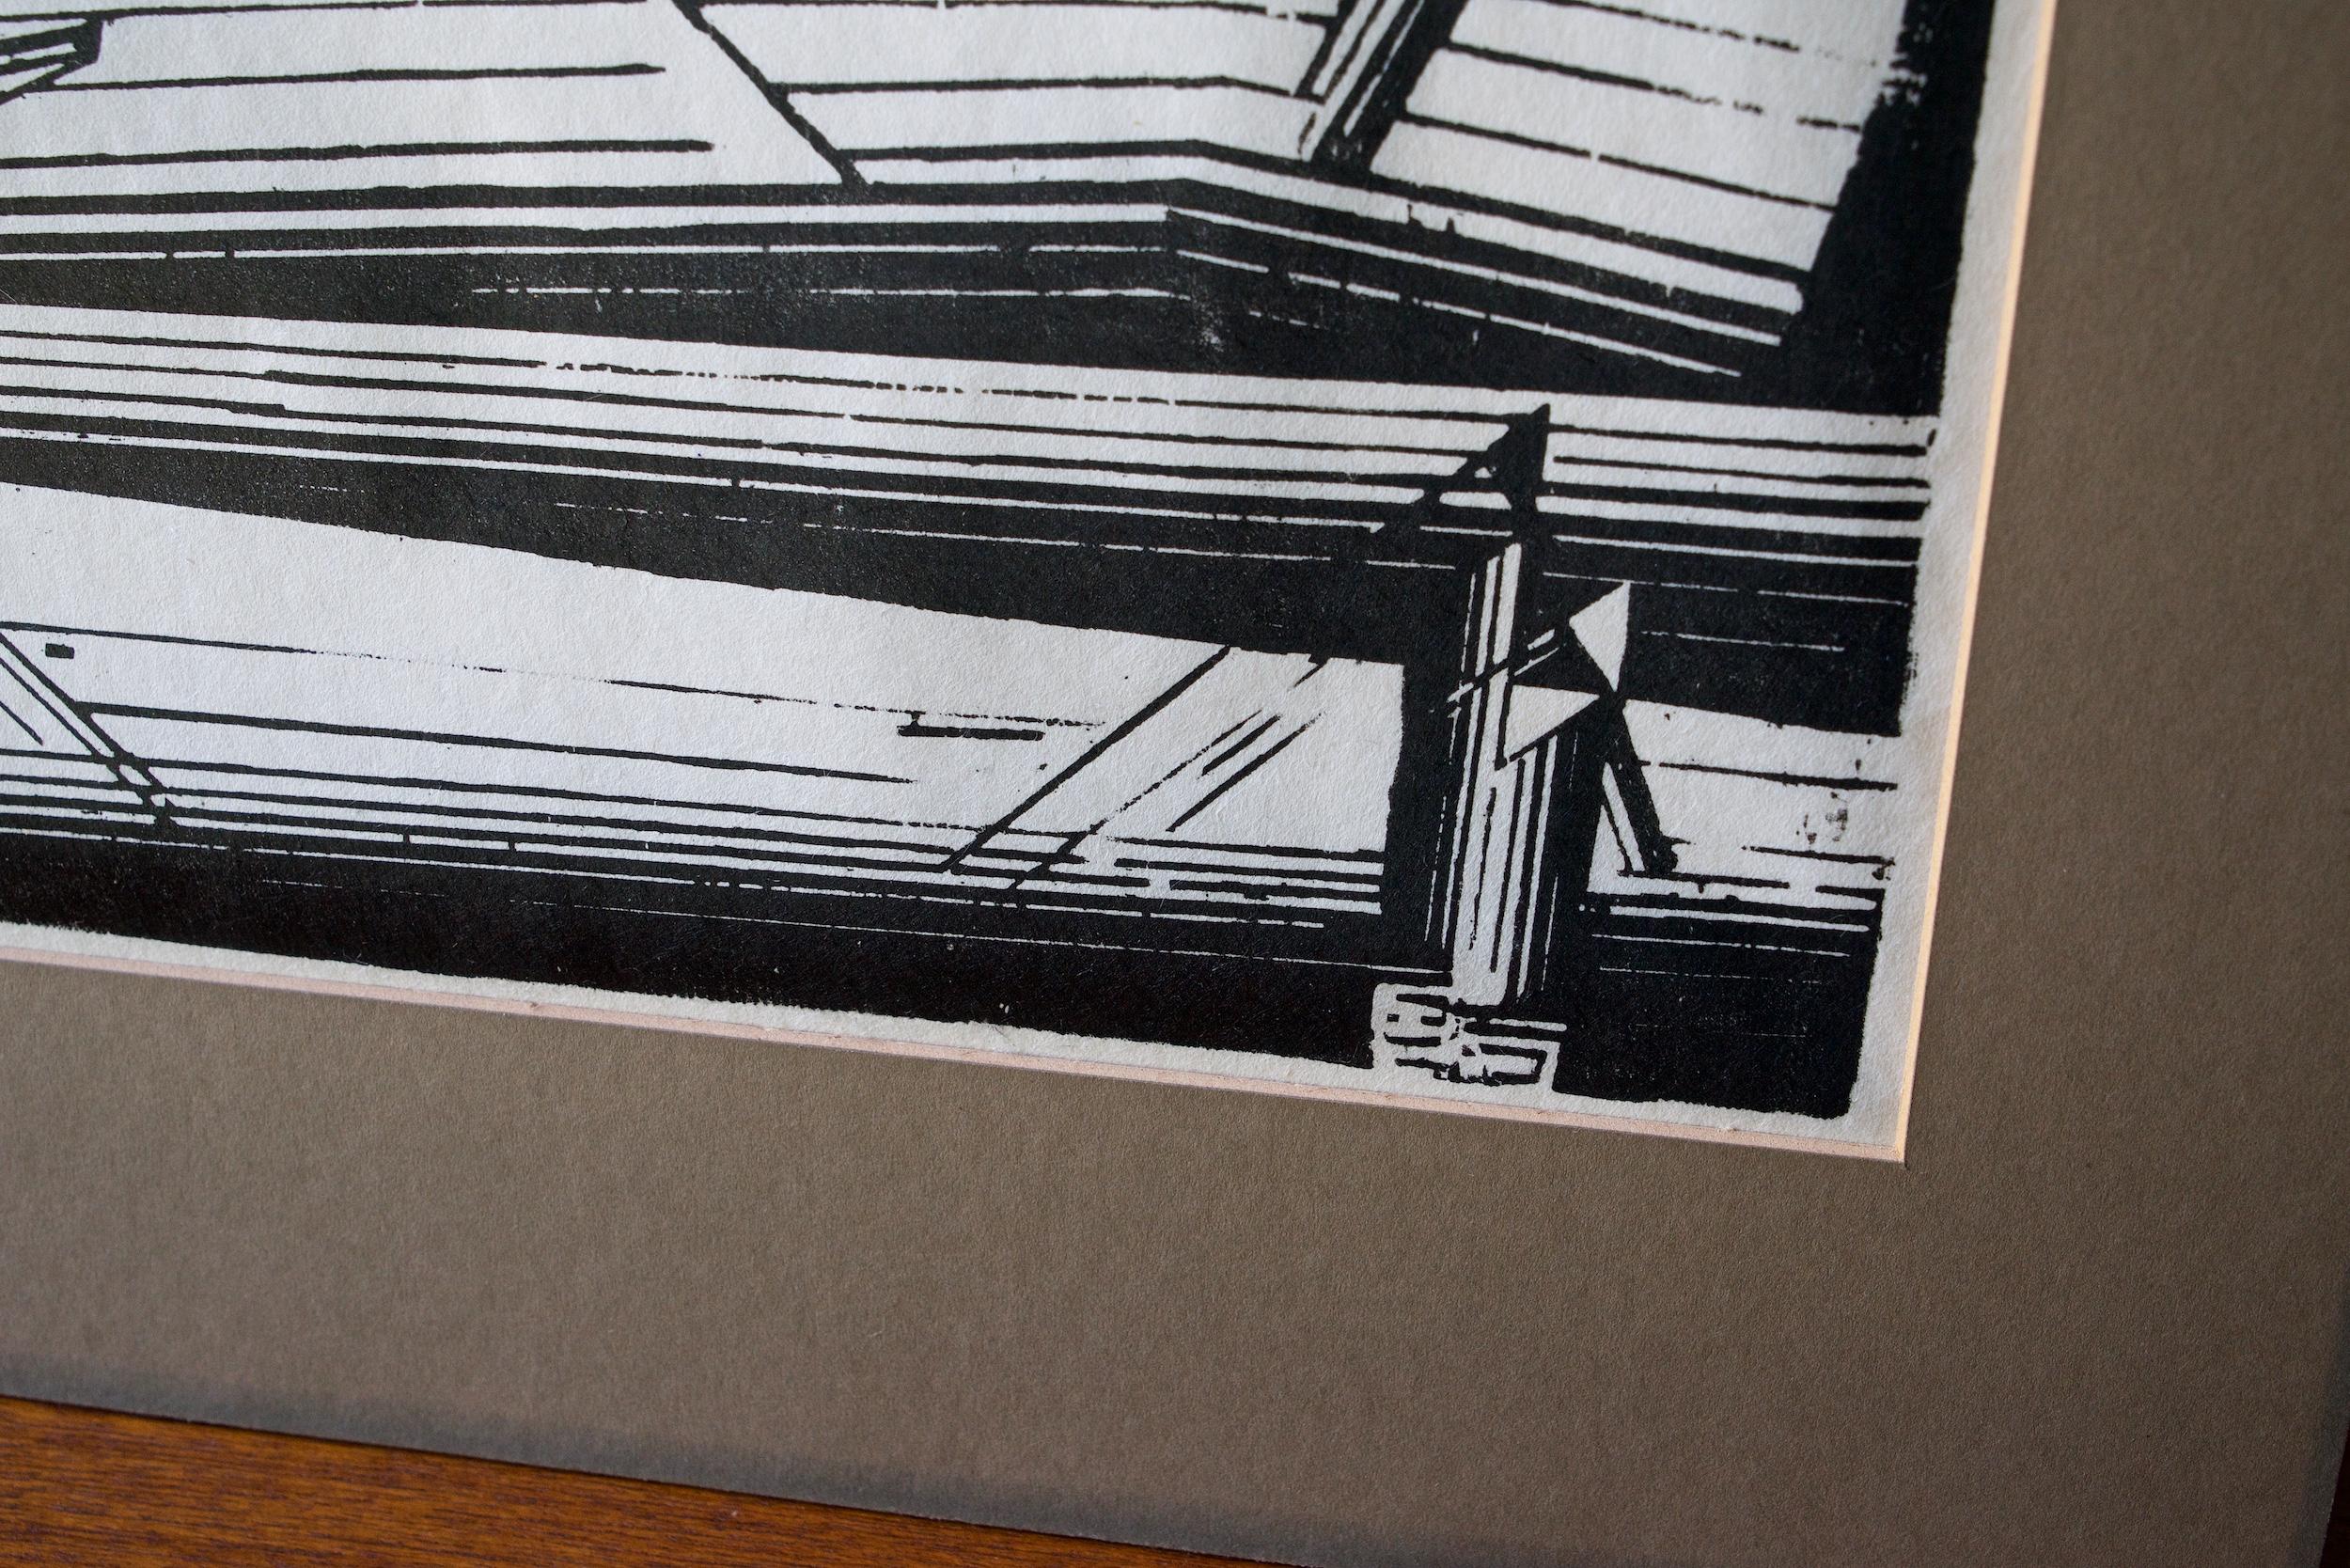 Papier Impression cubiste abstraite urbaine et futuriste des années 1920 de Lyonel Feininger:: gravure sur bois Art déco - Vue urbaine en vente